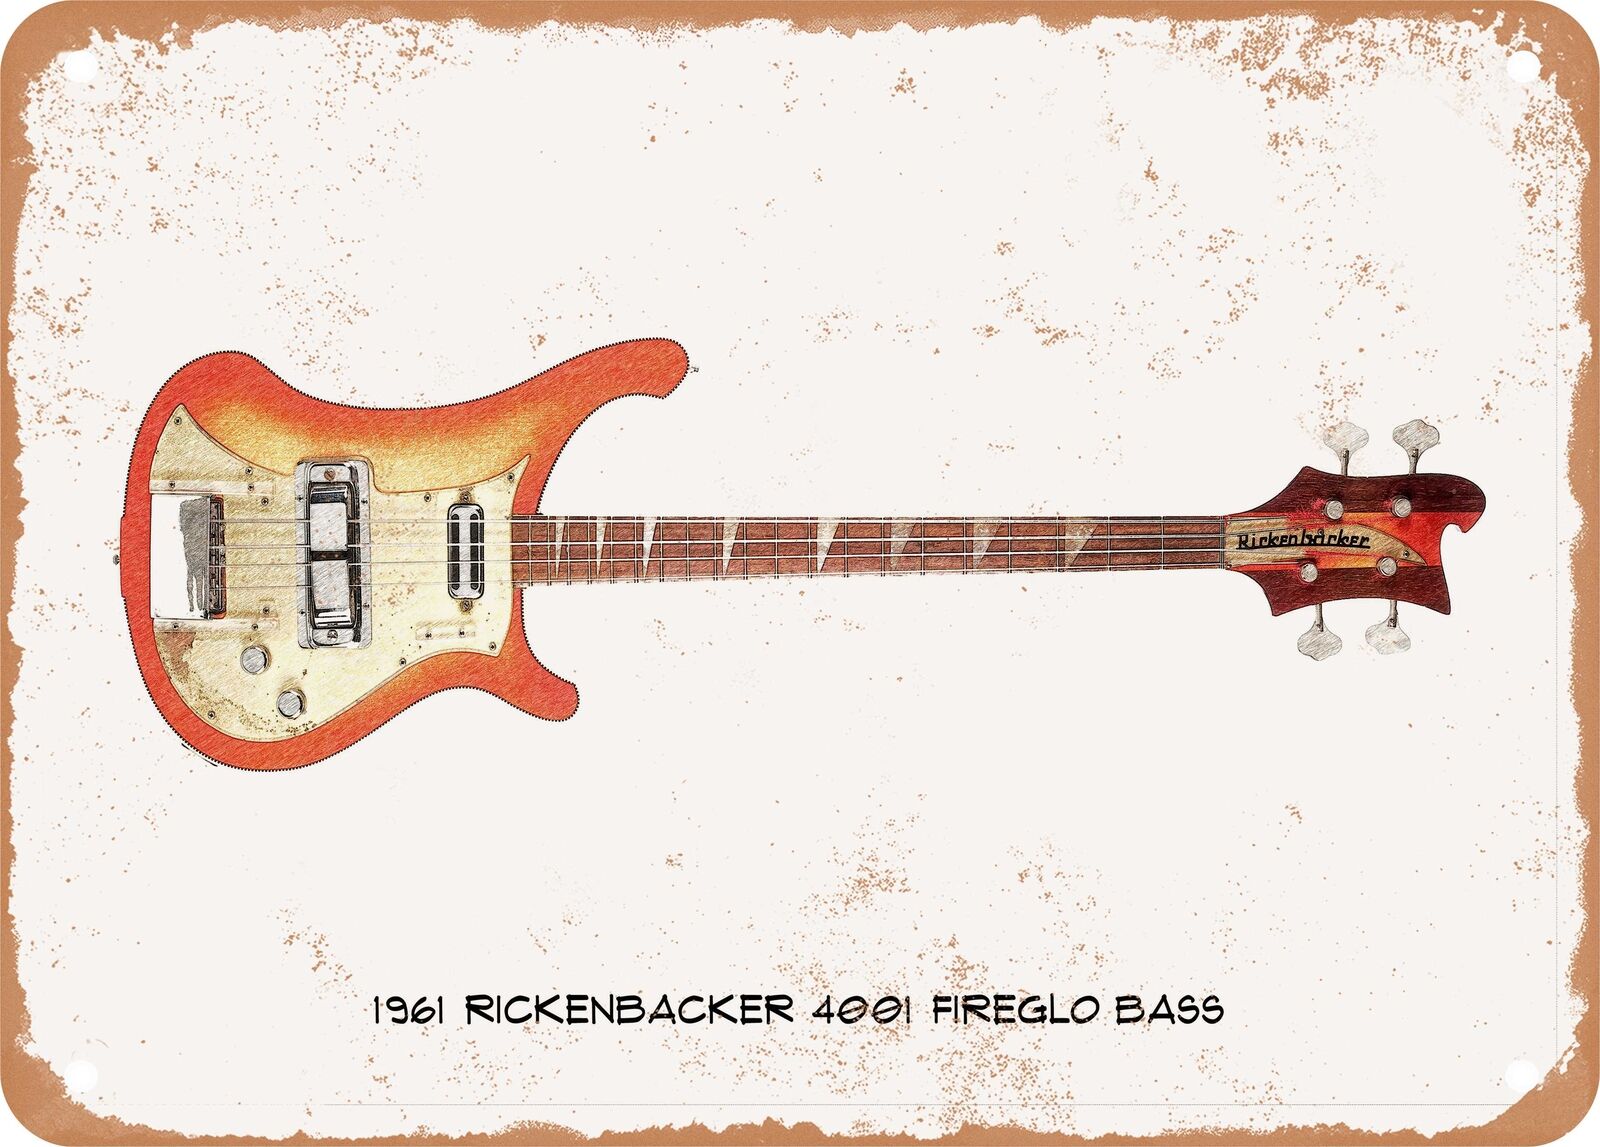 Guitar Art - 1961 Rickenbacker Bass Pencil Drawing - Rusty Look Metal Sign